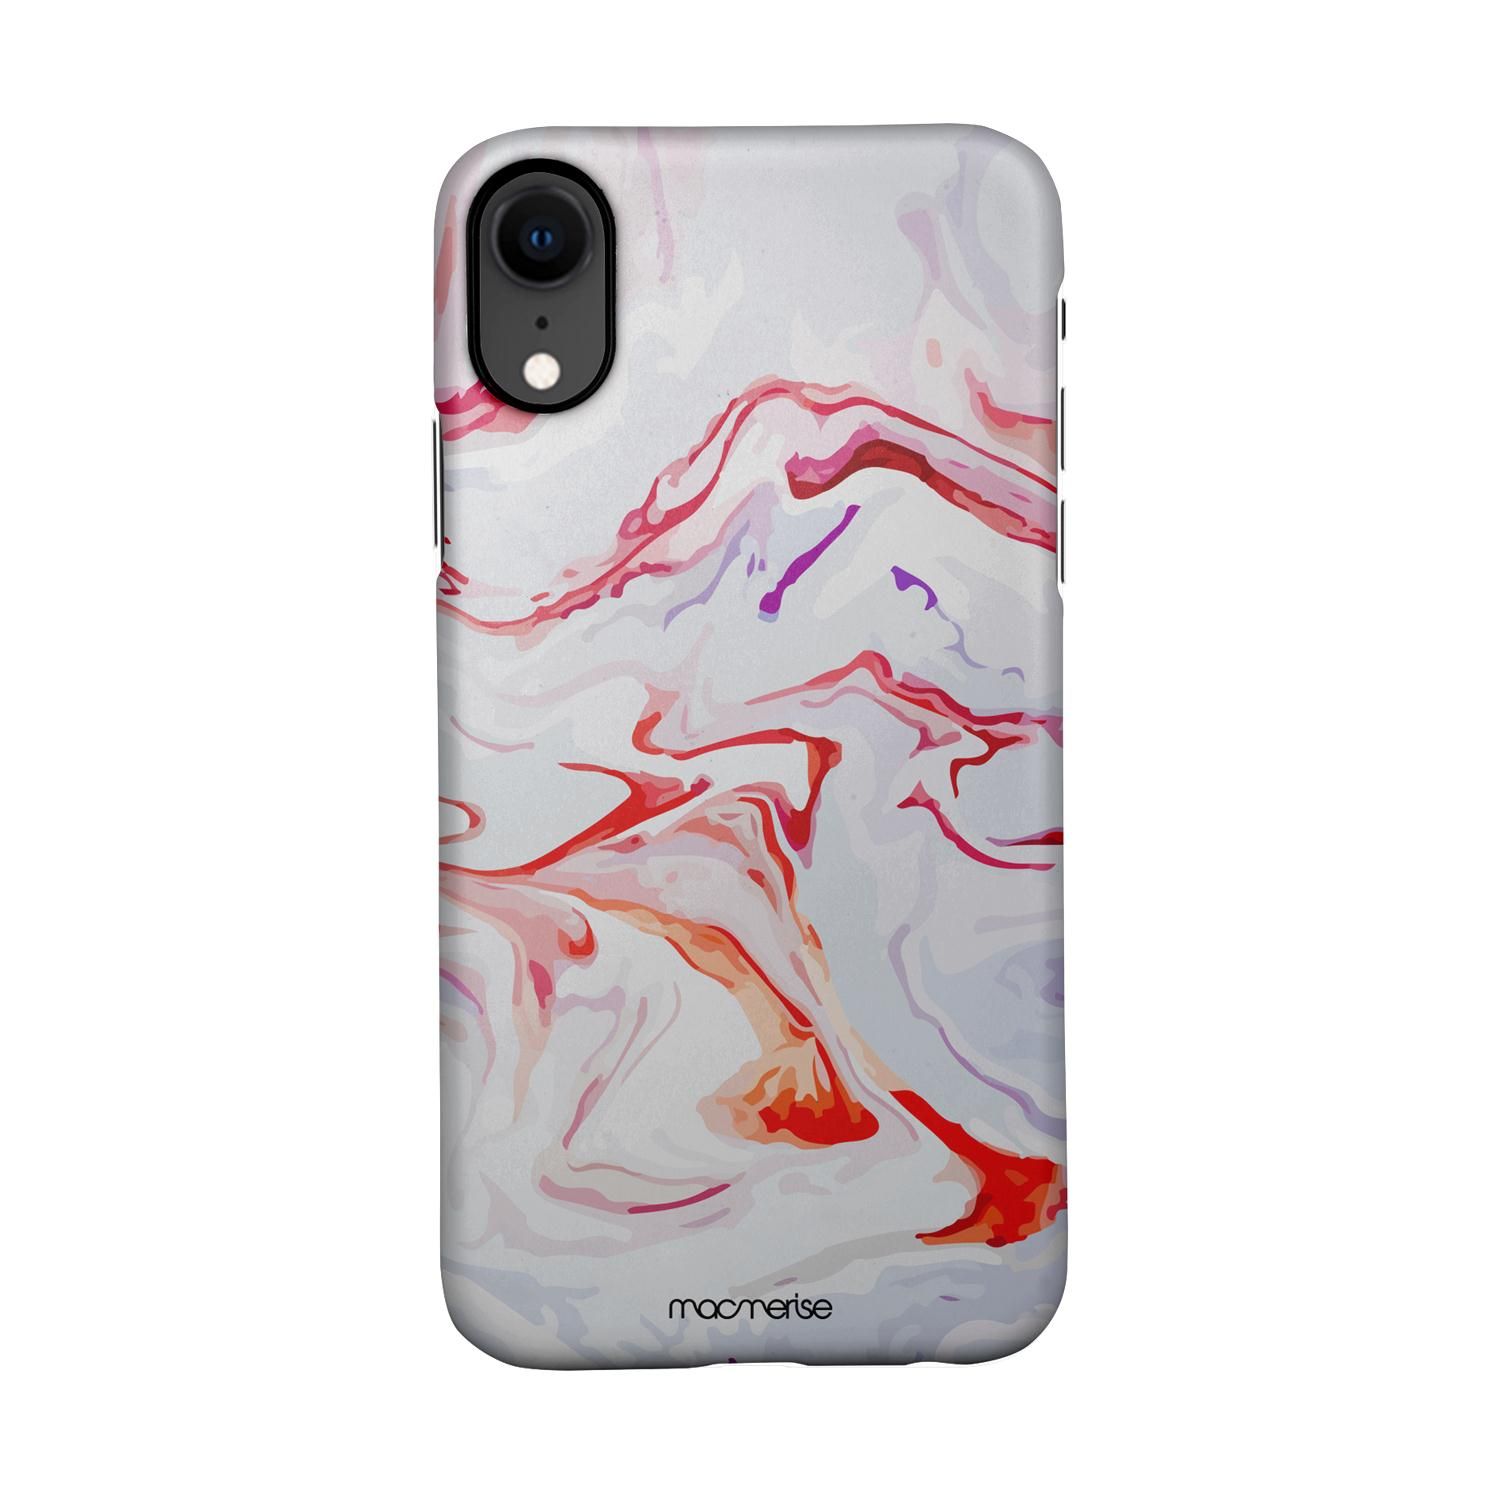 Buy Liquid Funk Marble - Sleek Phone Case for iPhone XR Online